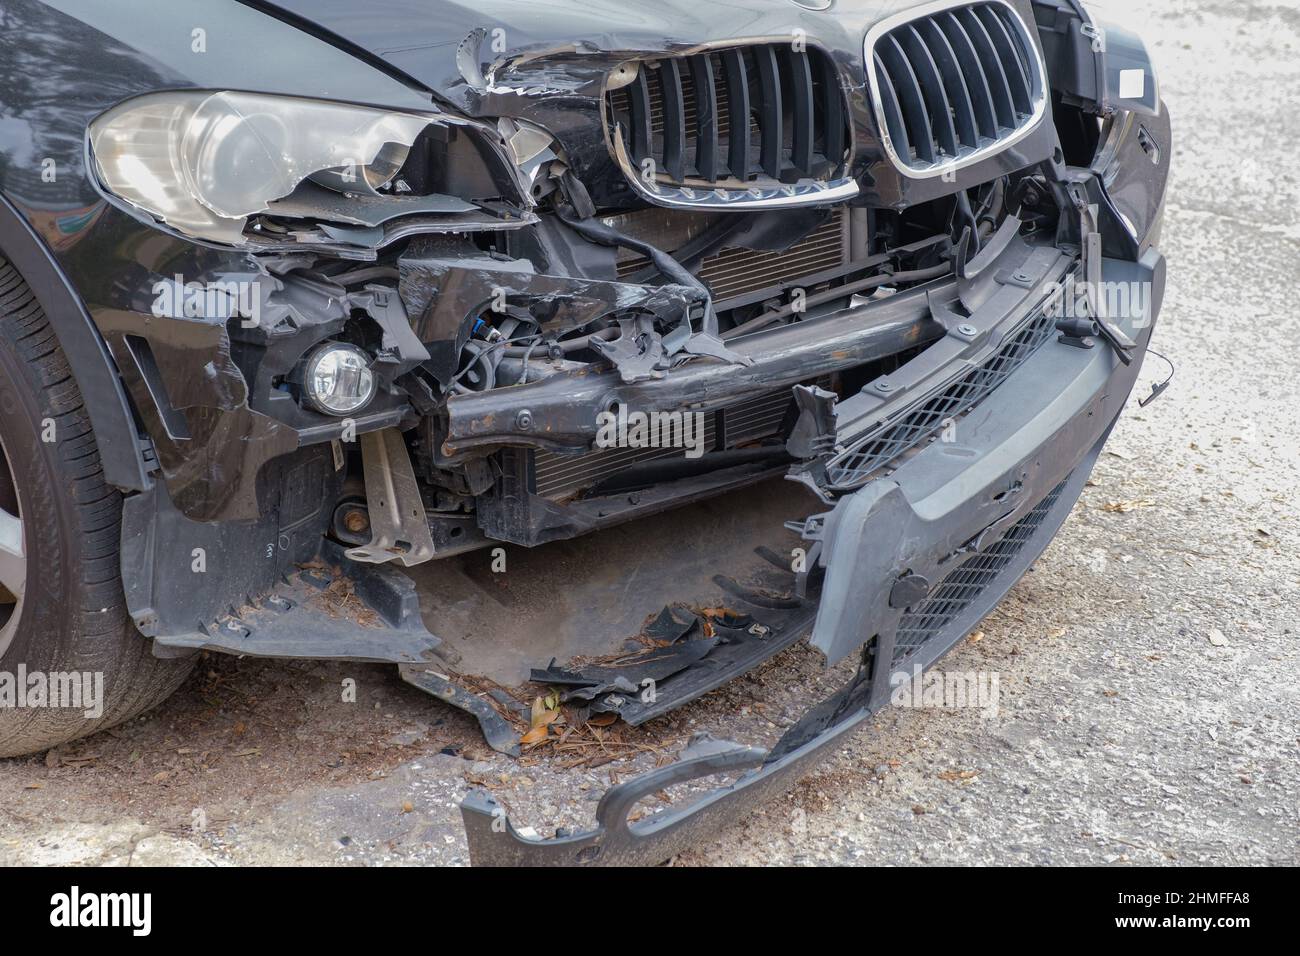 Daños graves en la parte delantera del automóvil tras una colisión el 7 de febrero de 2022 en Nueva Orleans, LA, EE.UU Foto de stock